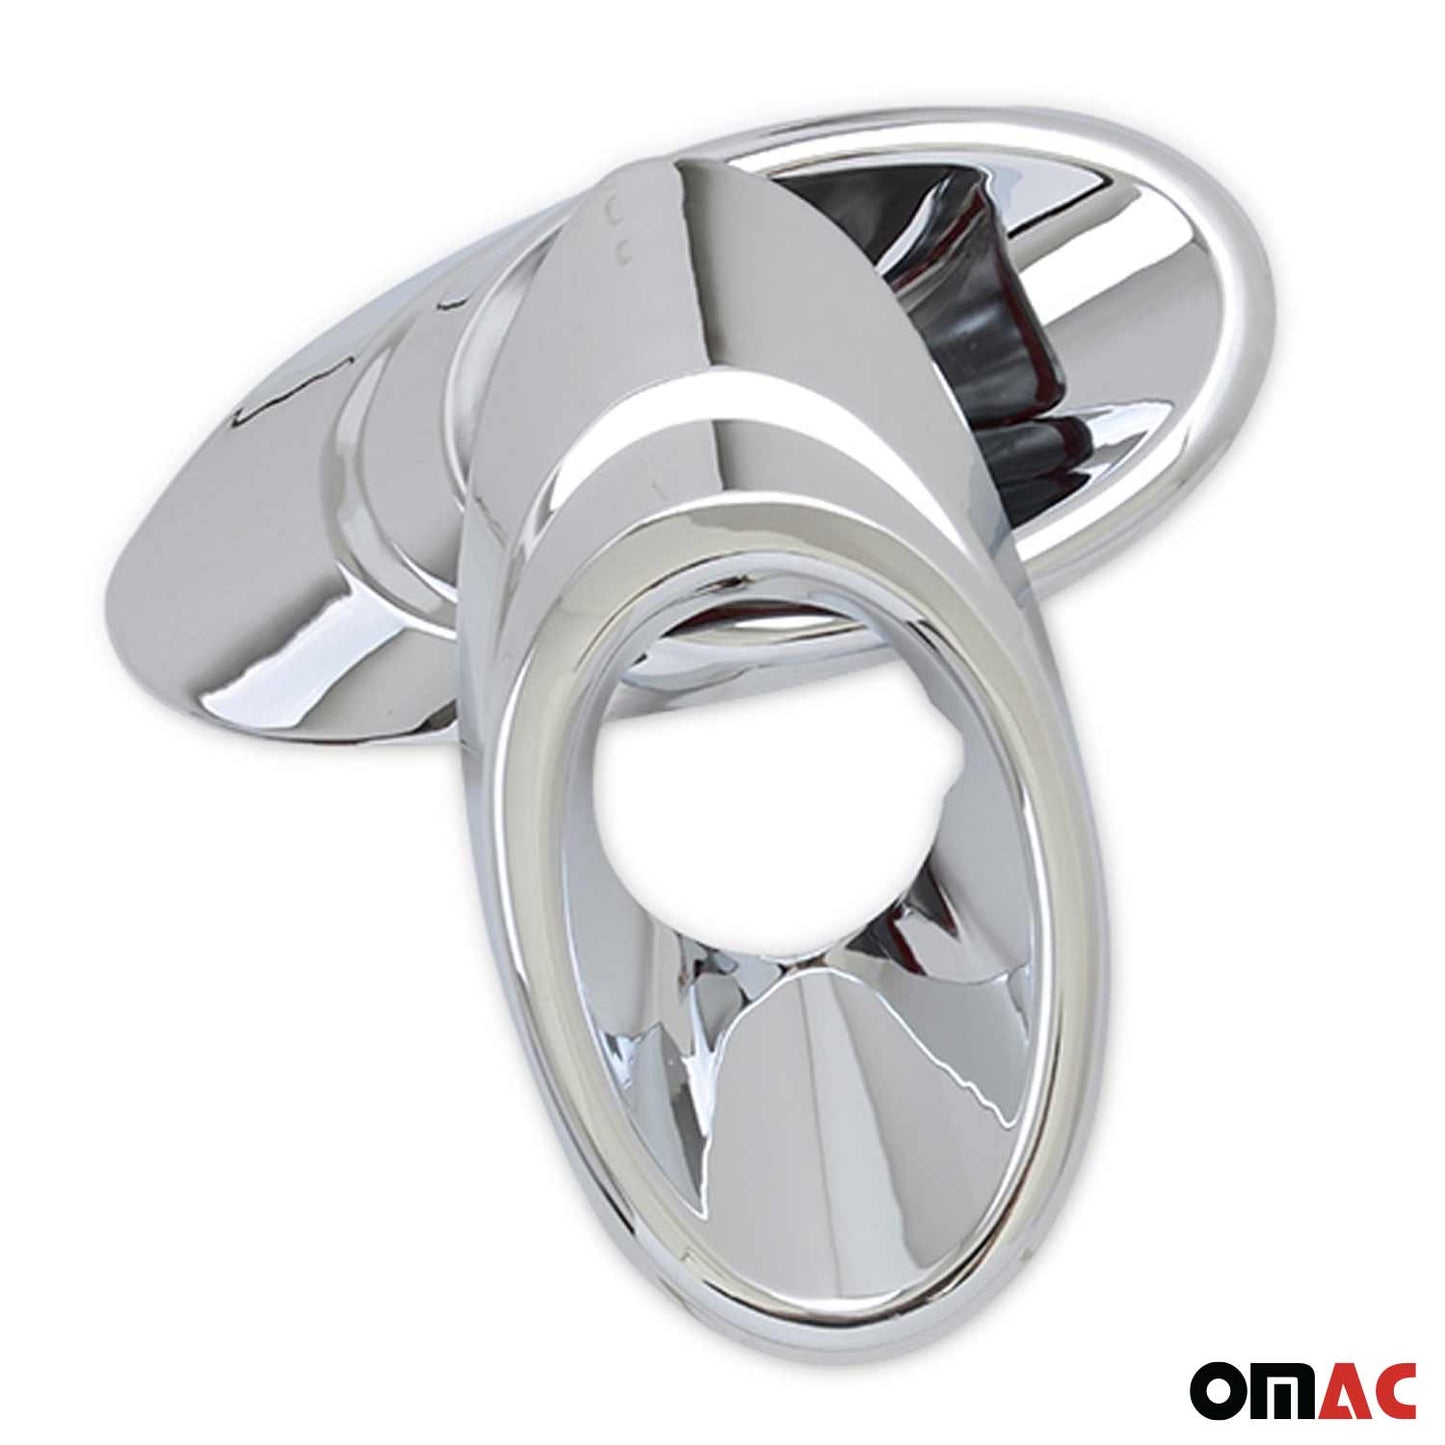 OMAC Fits Chevrolet Sonic 2012-2021 Chrome Fog Light Frame Trim Cover 2 Pcs 1601103